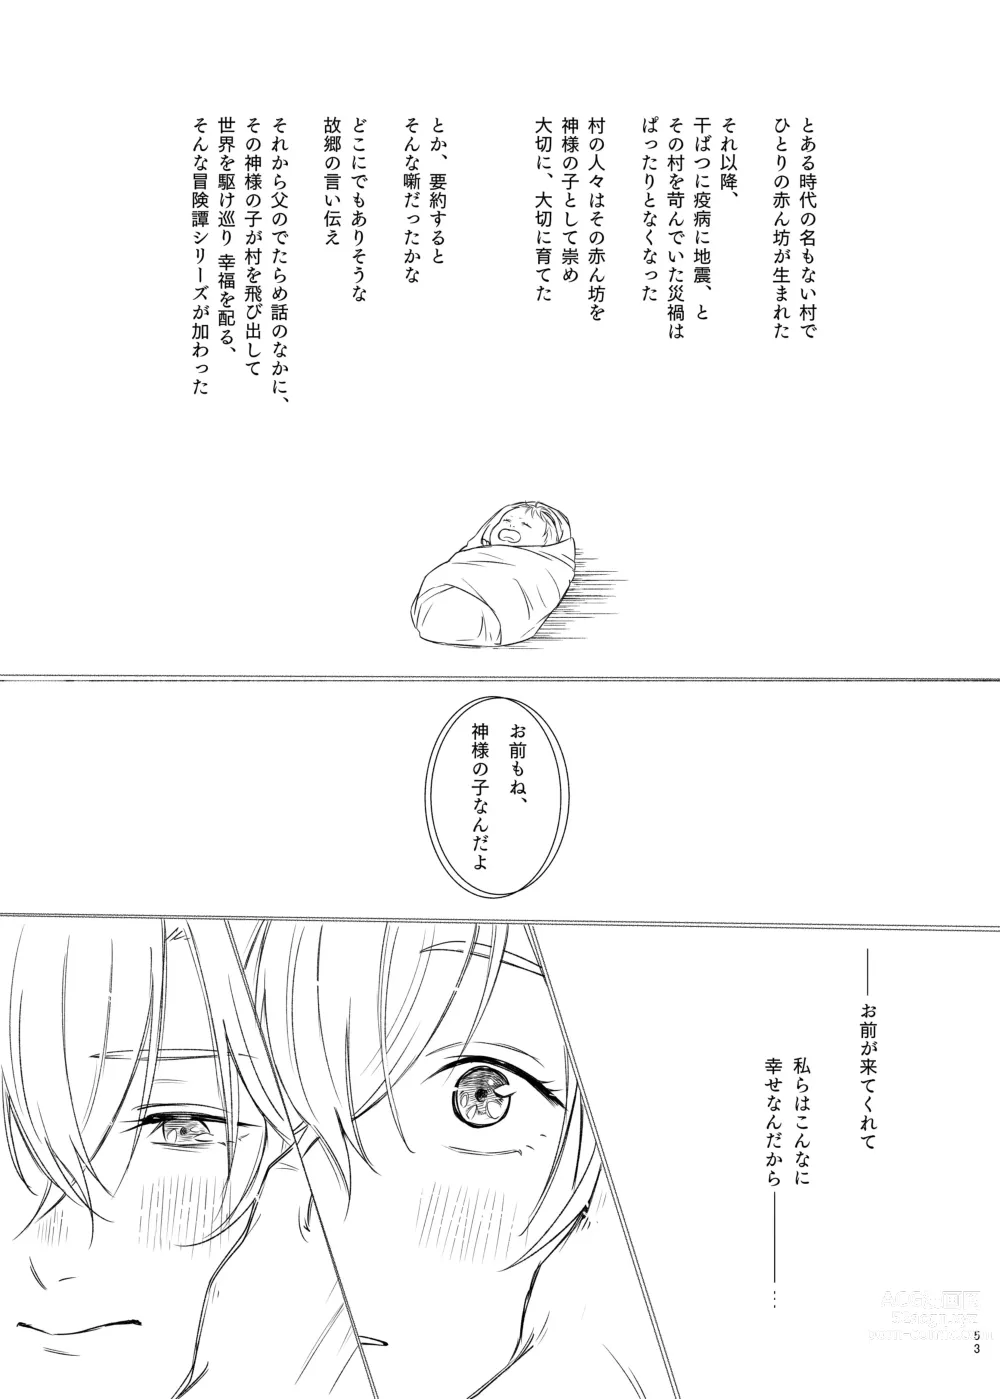 Page 53 of doujinshi Kami sama no ko